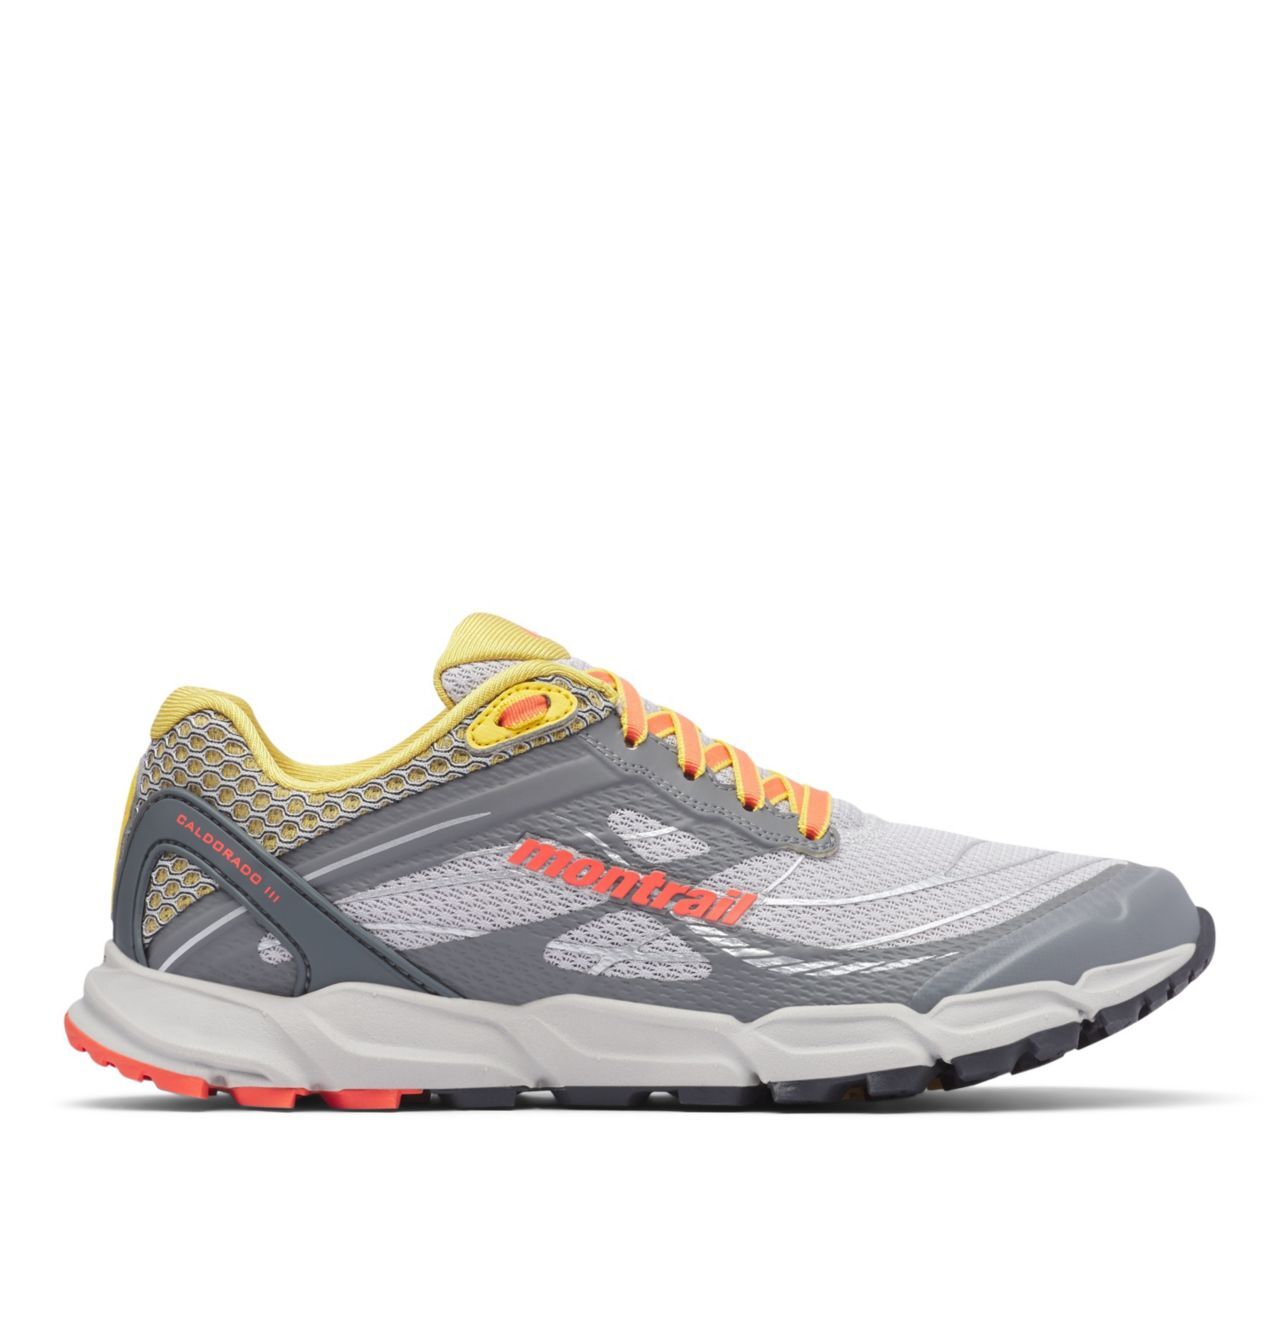 Columbia - Caldorado III - Trail running shoes - Women's